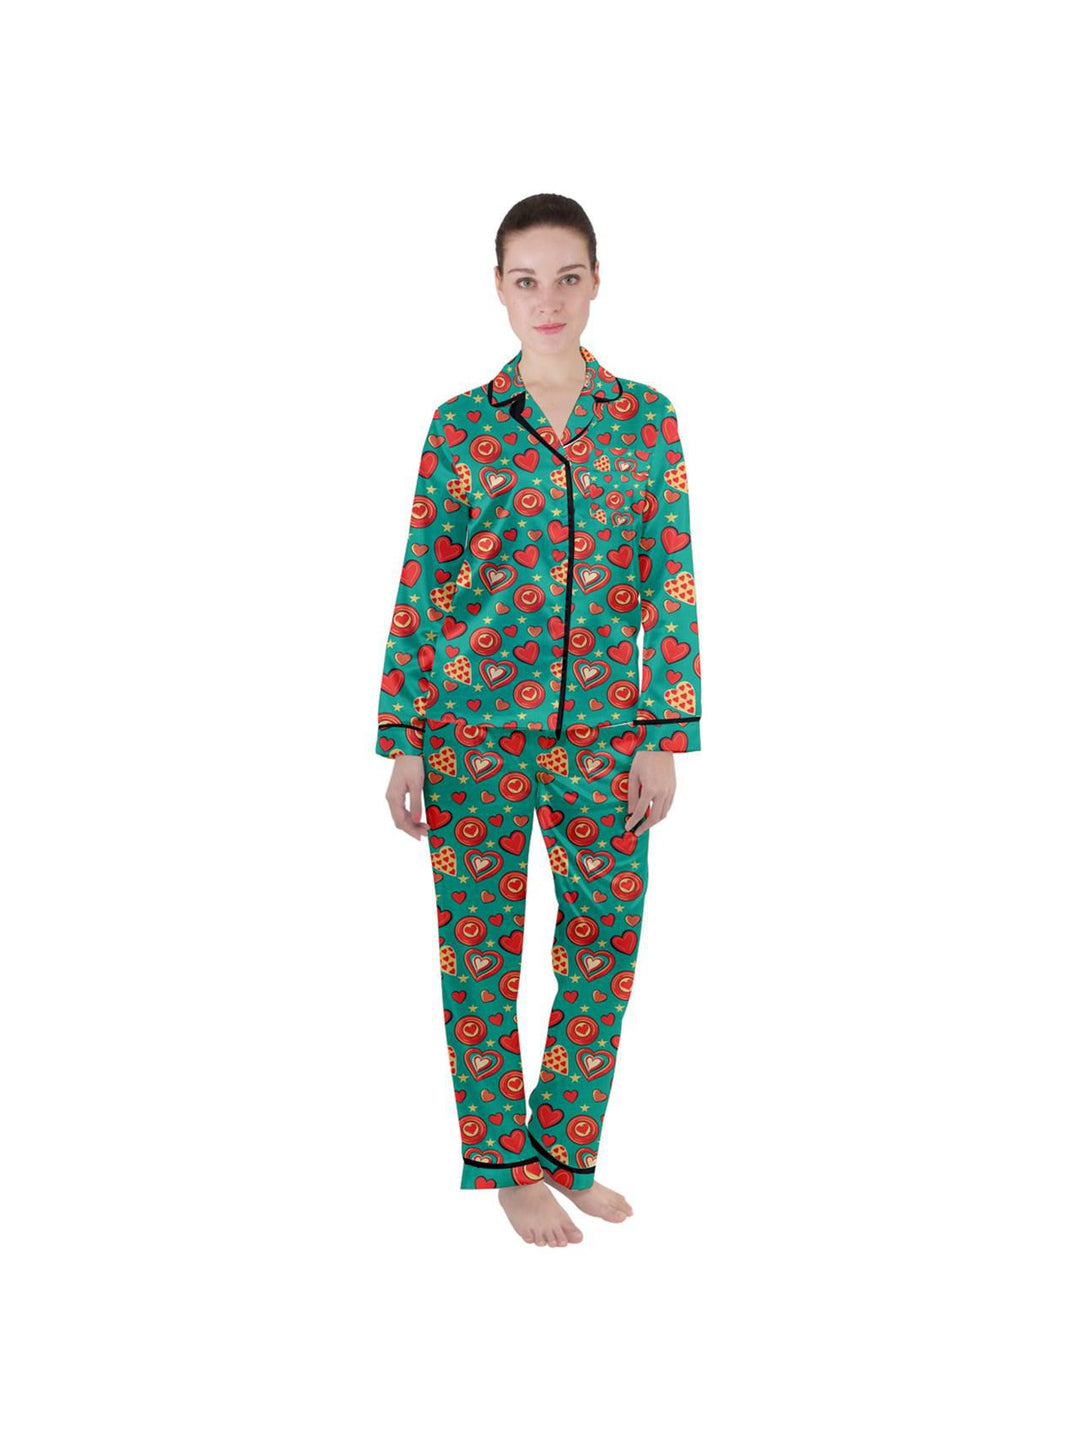 Retro Hearts Women's Long Sleeve Satin Pyjamas Set